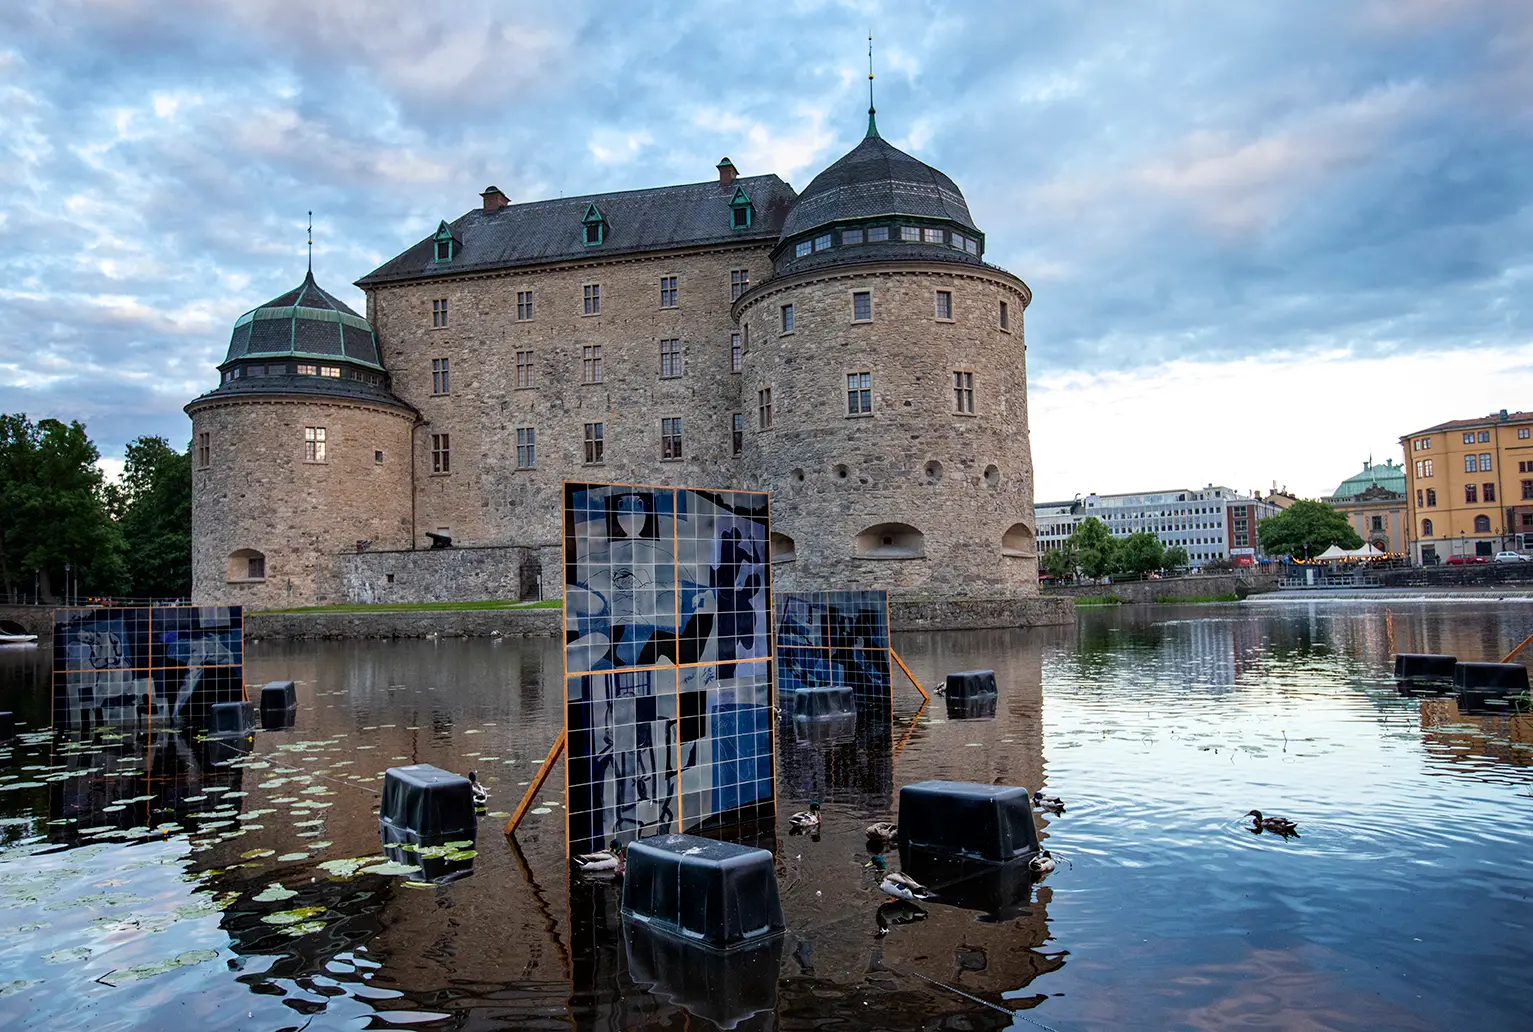 Översiktsbild på tavlor gjorda av keramikplattor som står placerade i vattnet runt Örebro slott. Keramikplattorna går i olika nyanser av blå och på dem syns manskroppar.